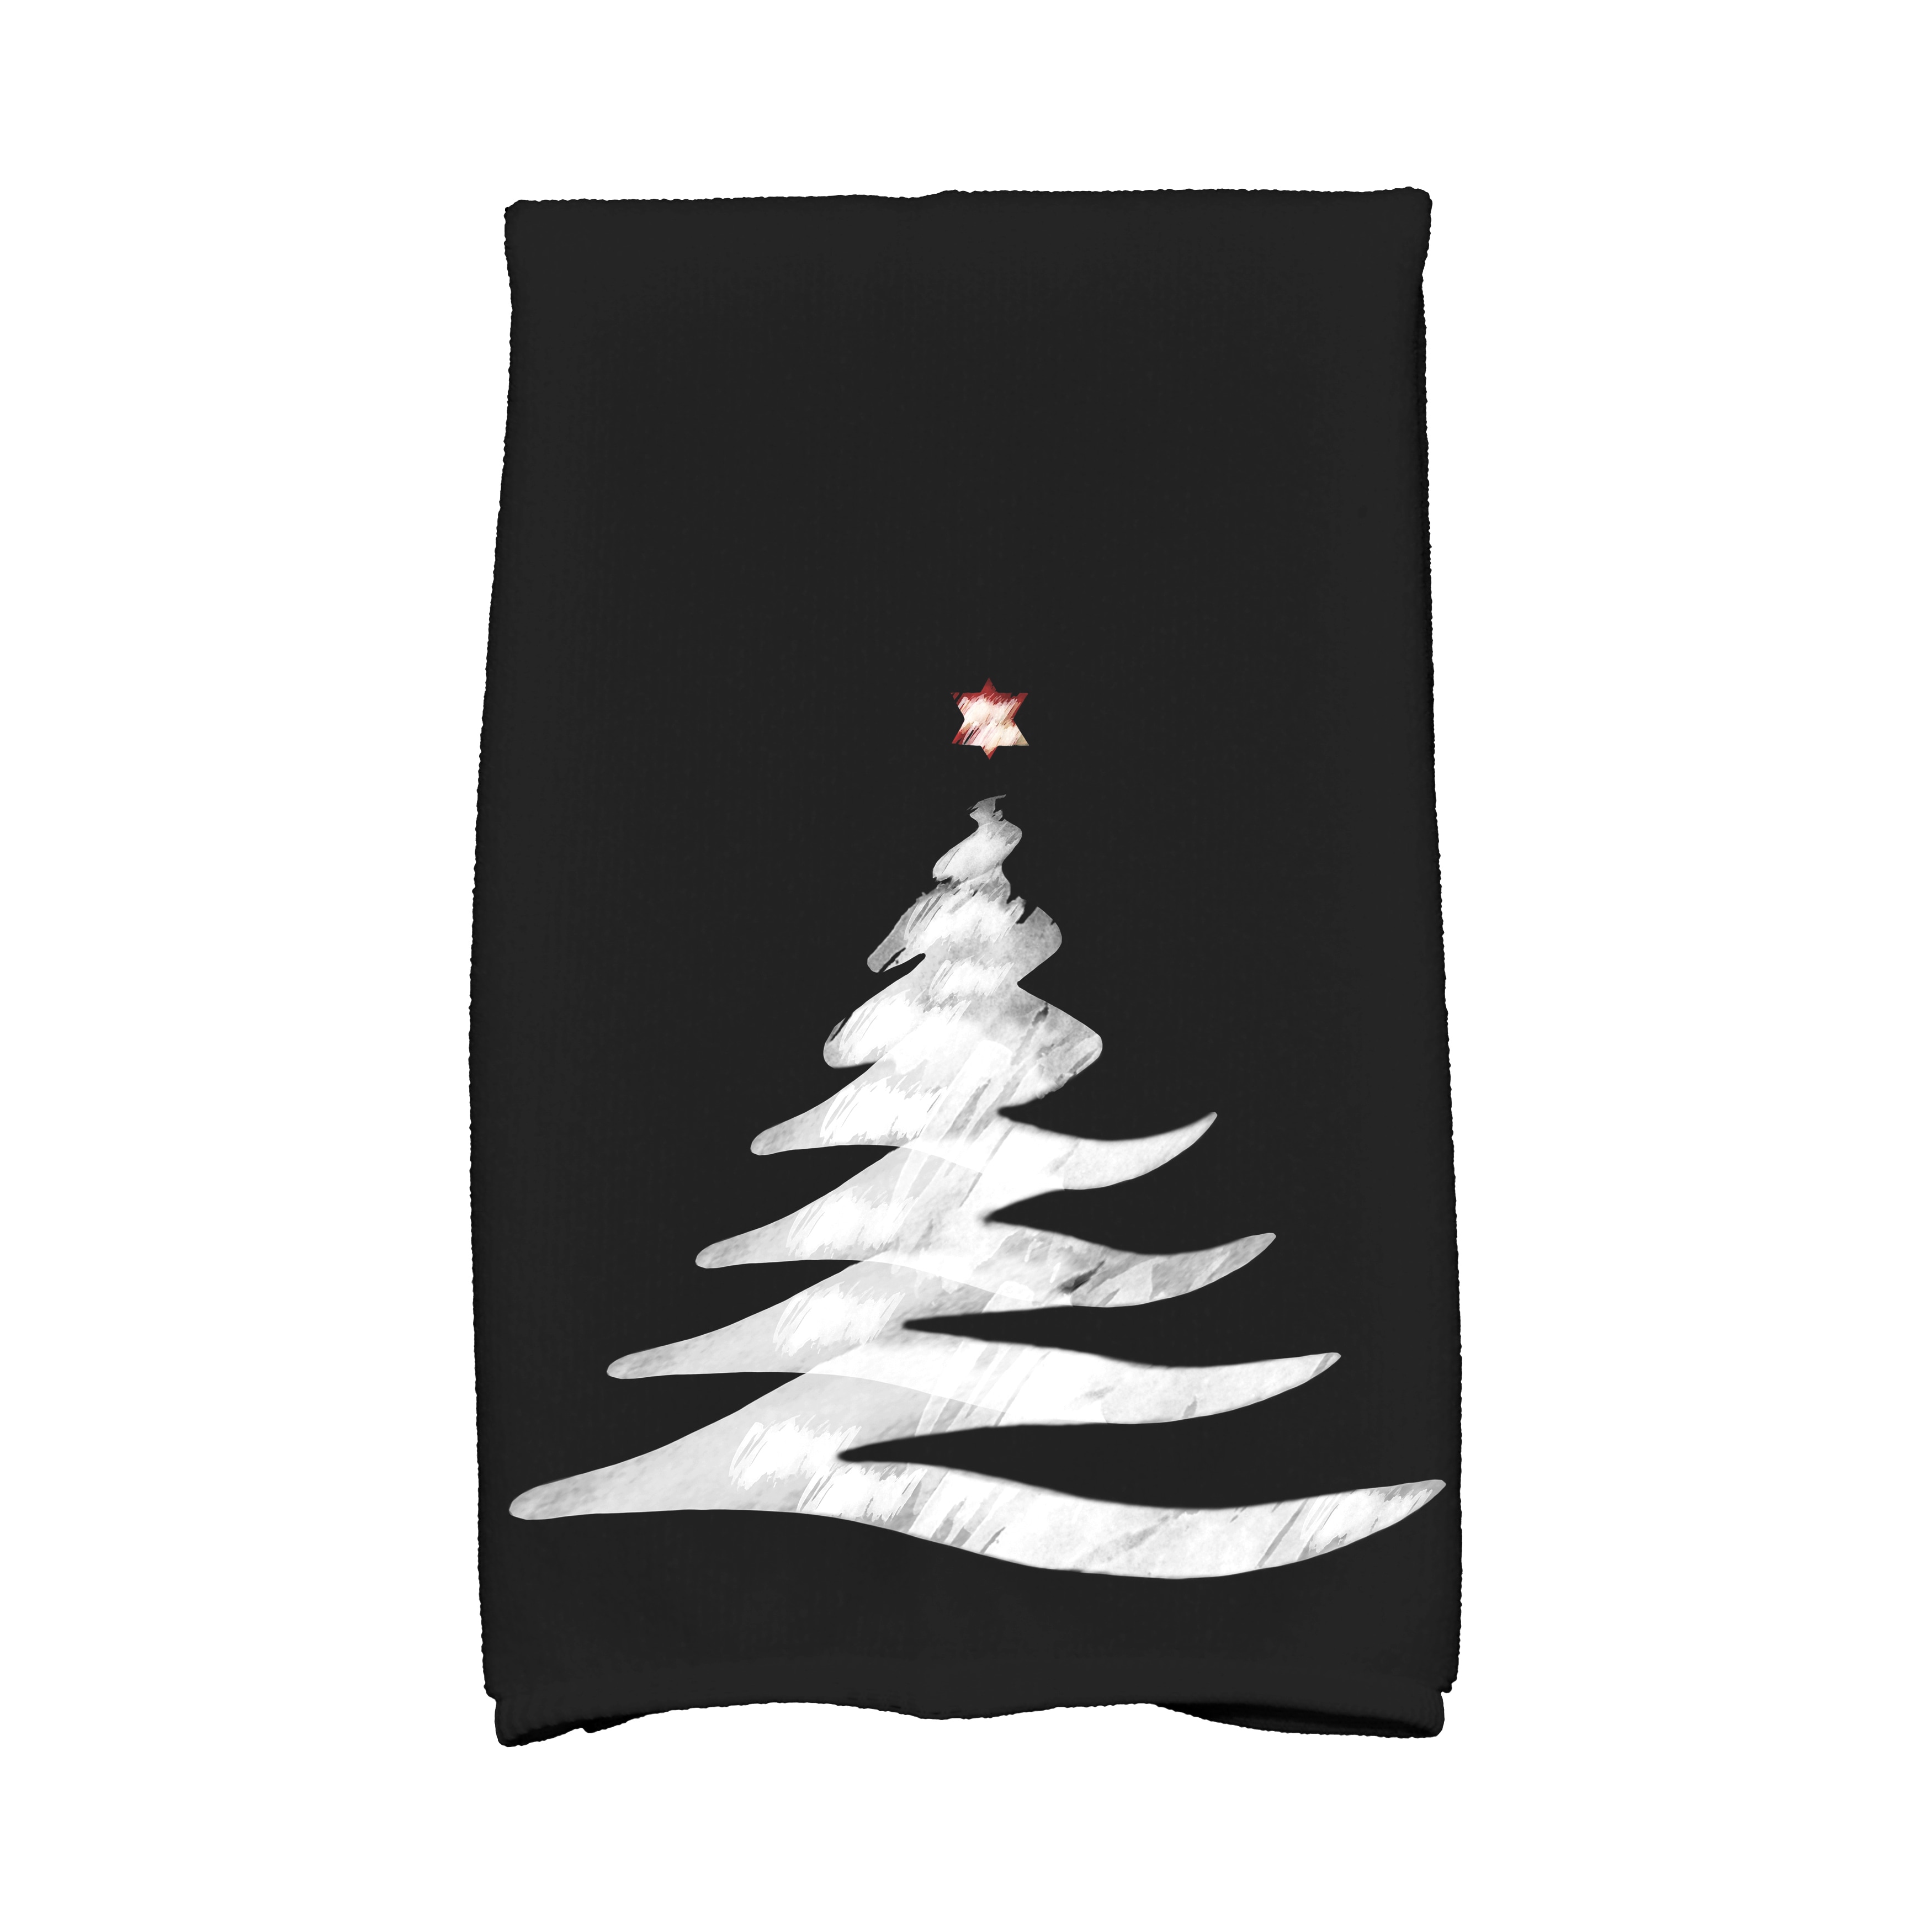 https://ak1.ostkcdn.com/images/products/12305318/16-x-25-inch-Wishing-Tree-Holiday-Geometric-Print-Kitchen-Towel-b3370fdb-fd6a-4d6d-8f50-934a03c10369.jpg